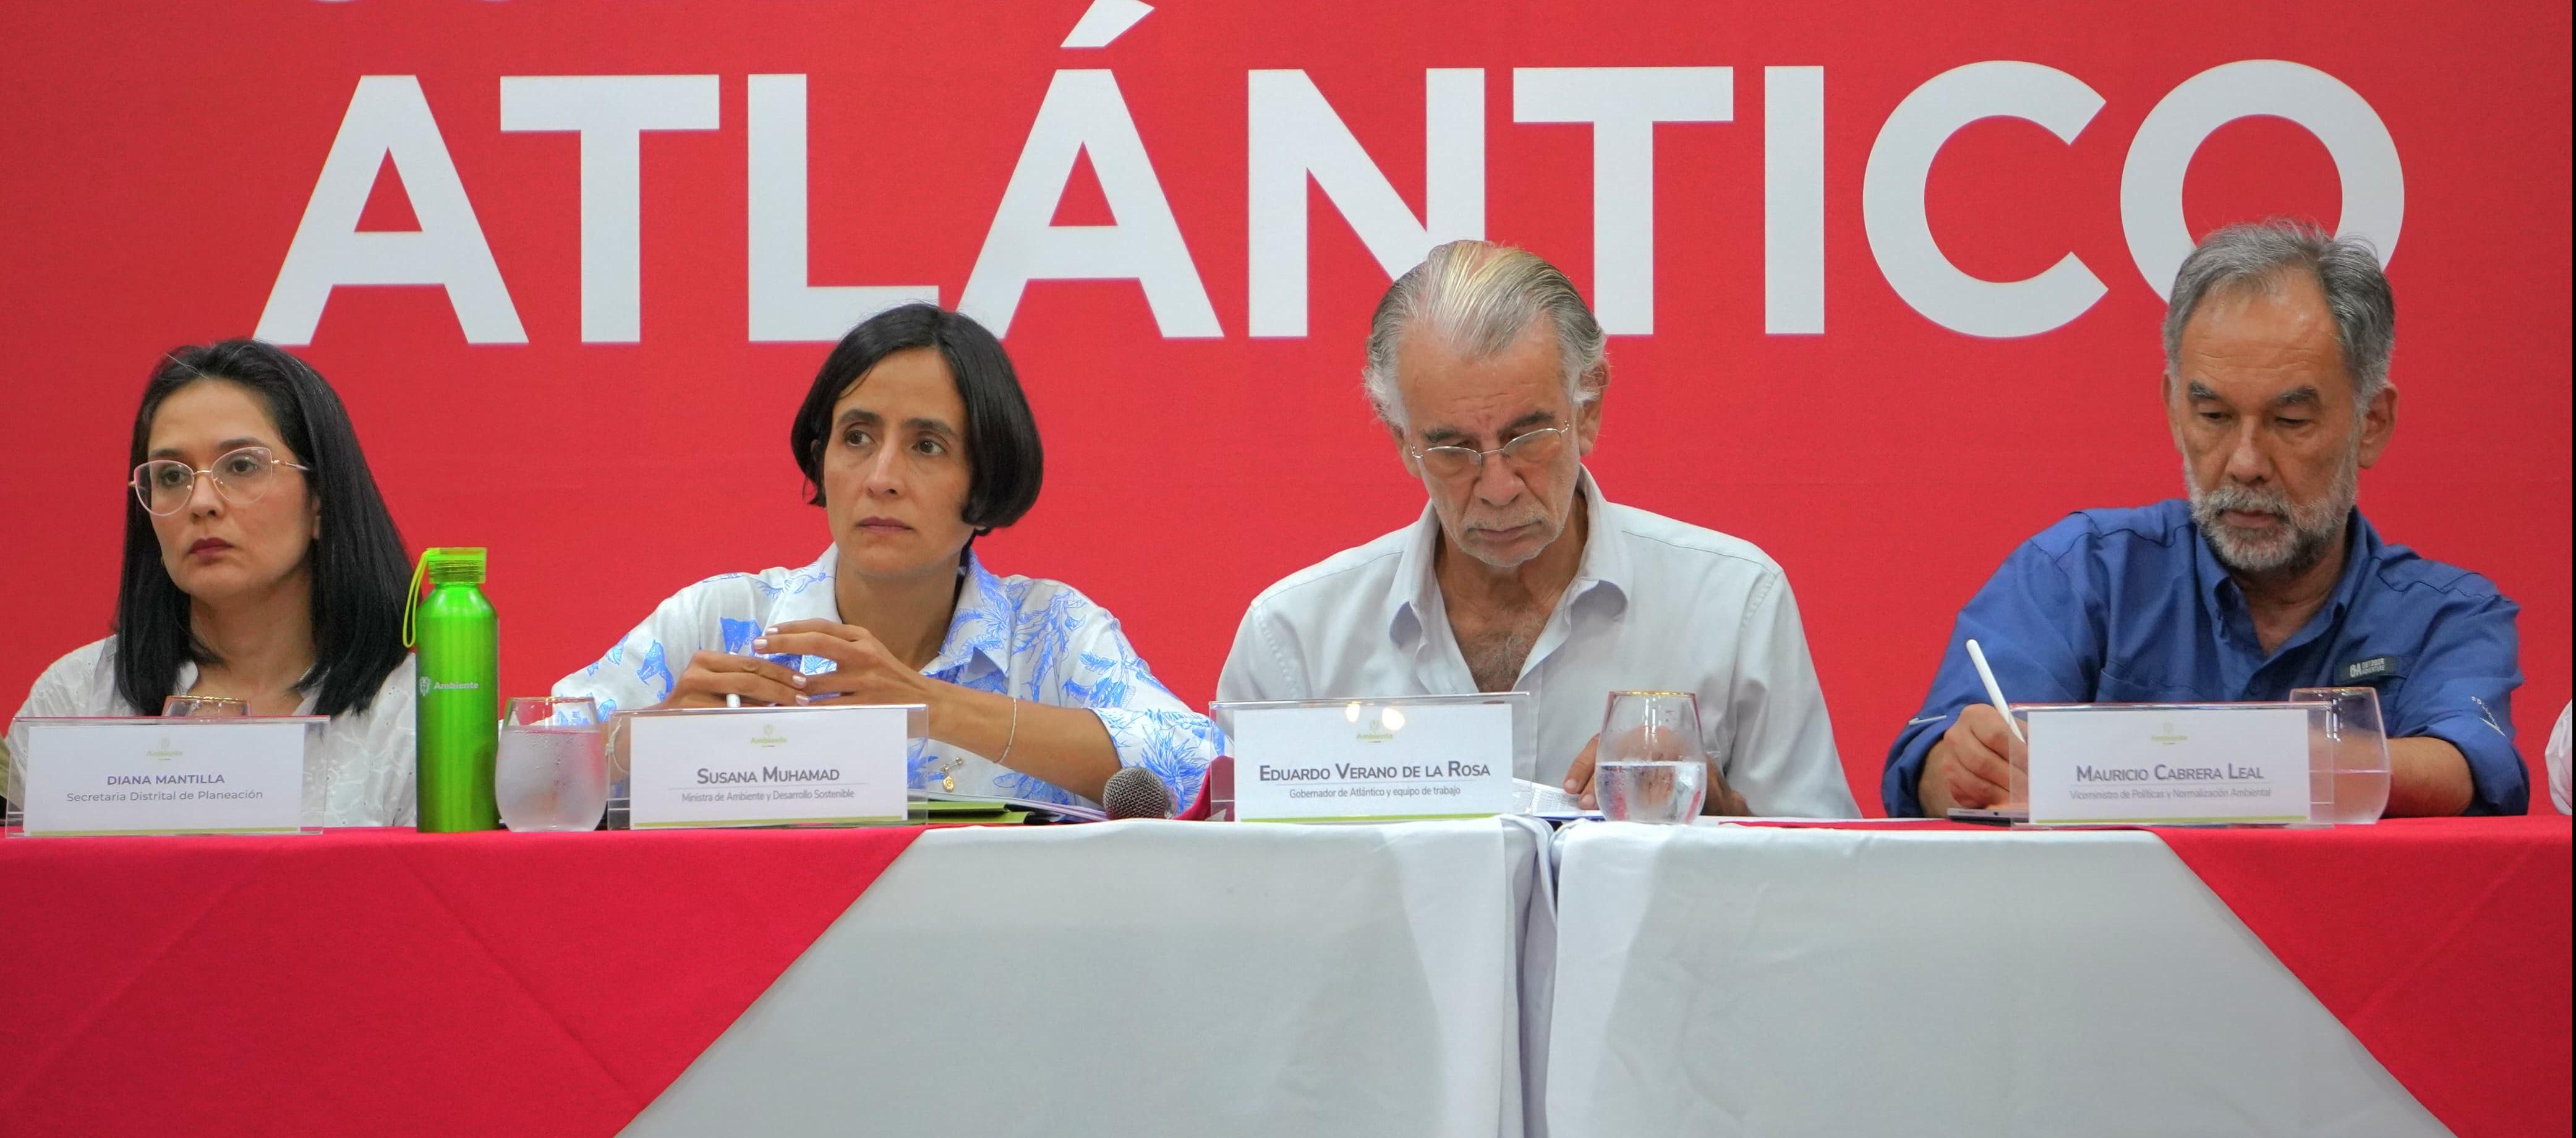 La ministra del Ambiente, Susana Muhamad, y el gobernador Eduardo Verano.